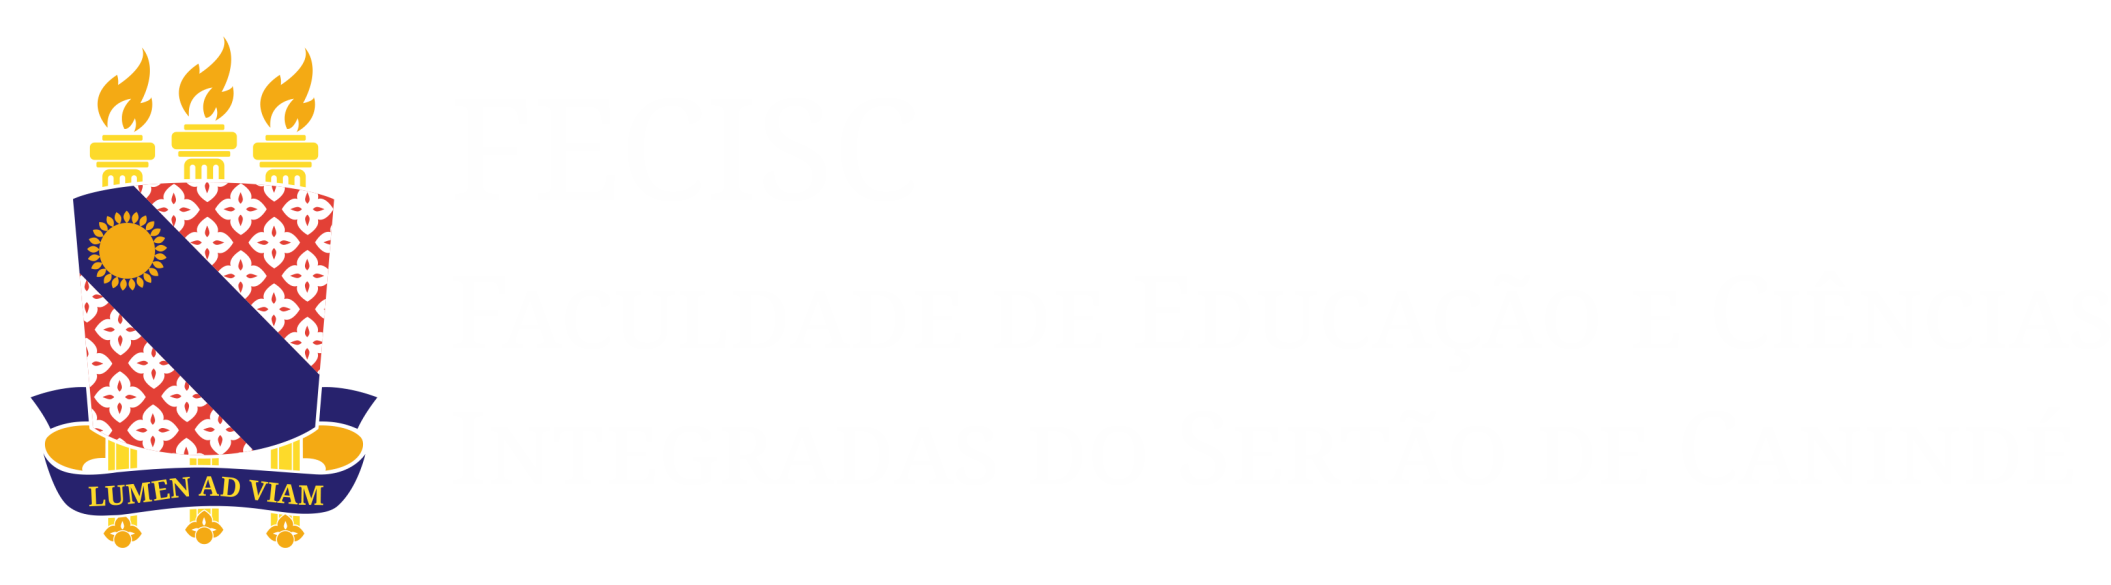 Logo_Fecisc